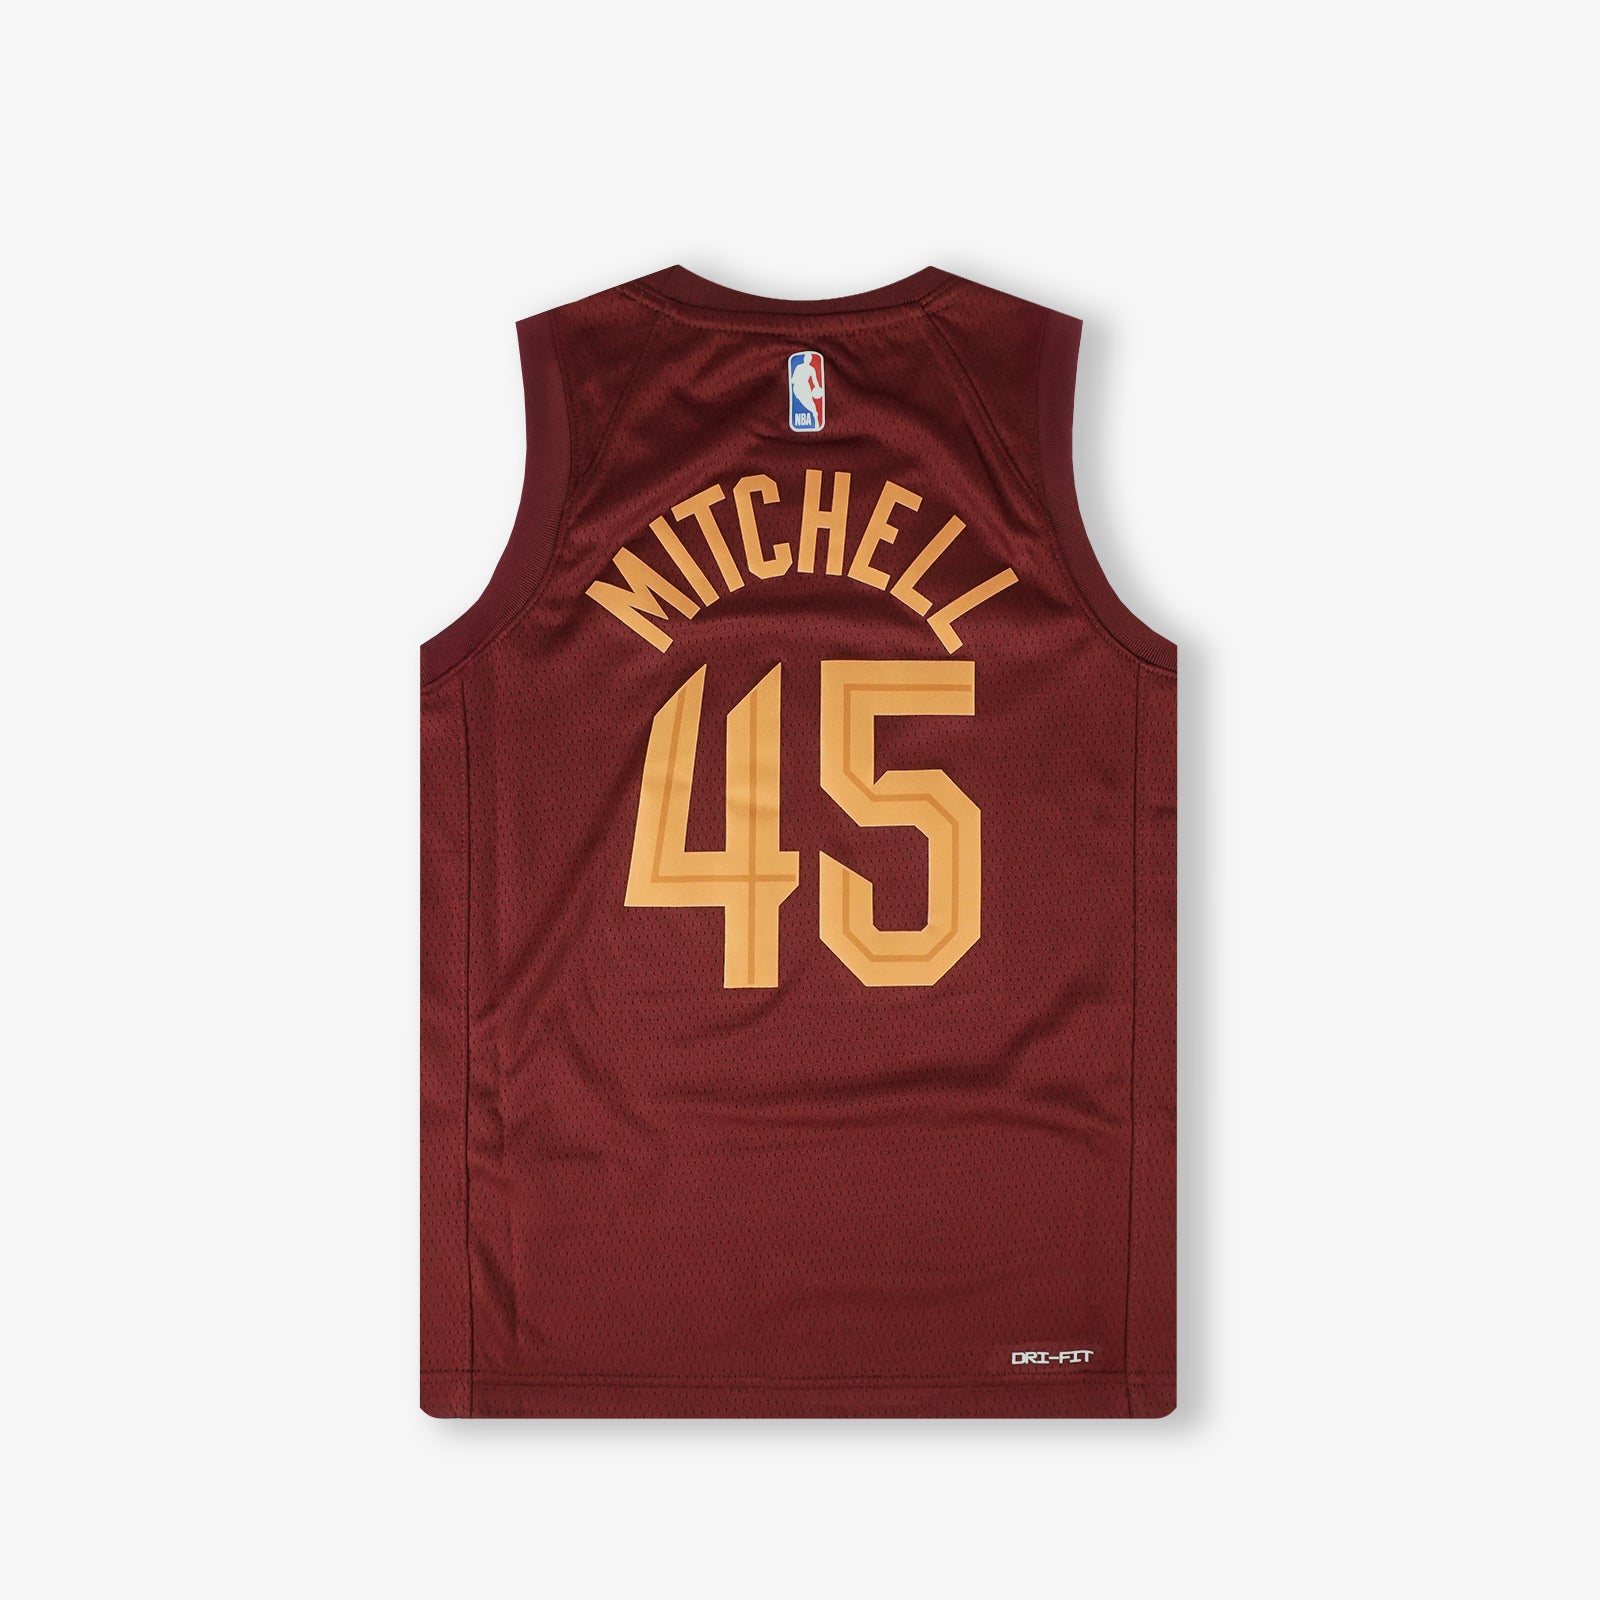 Donovan Mitchell Basketball Jerseys